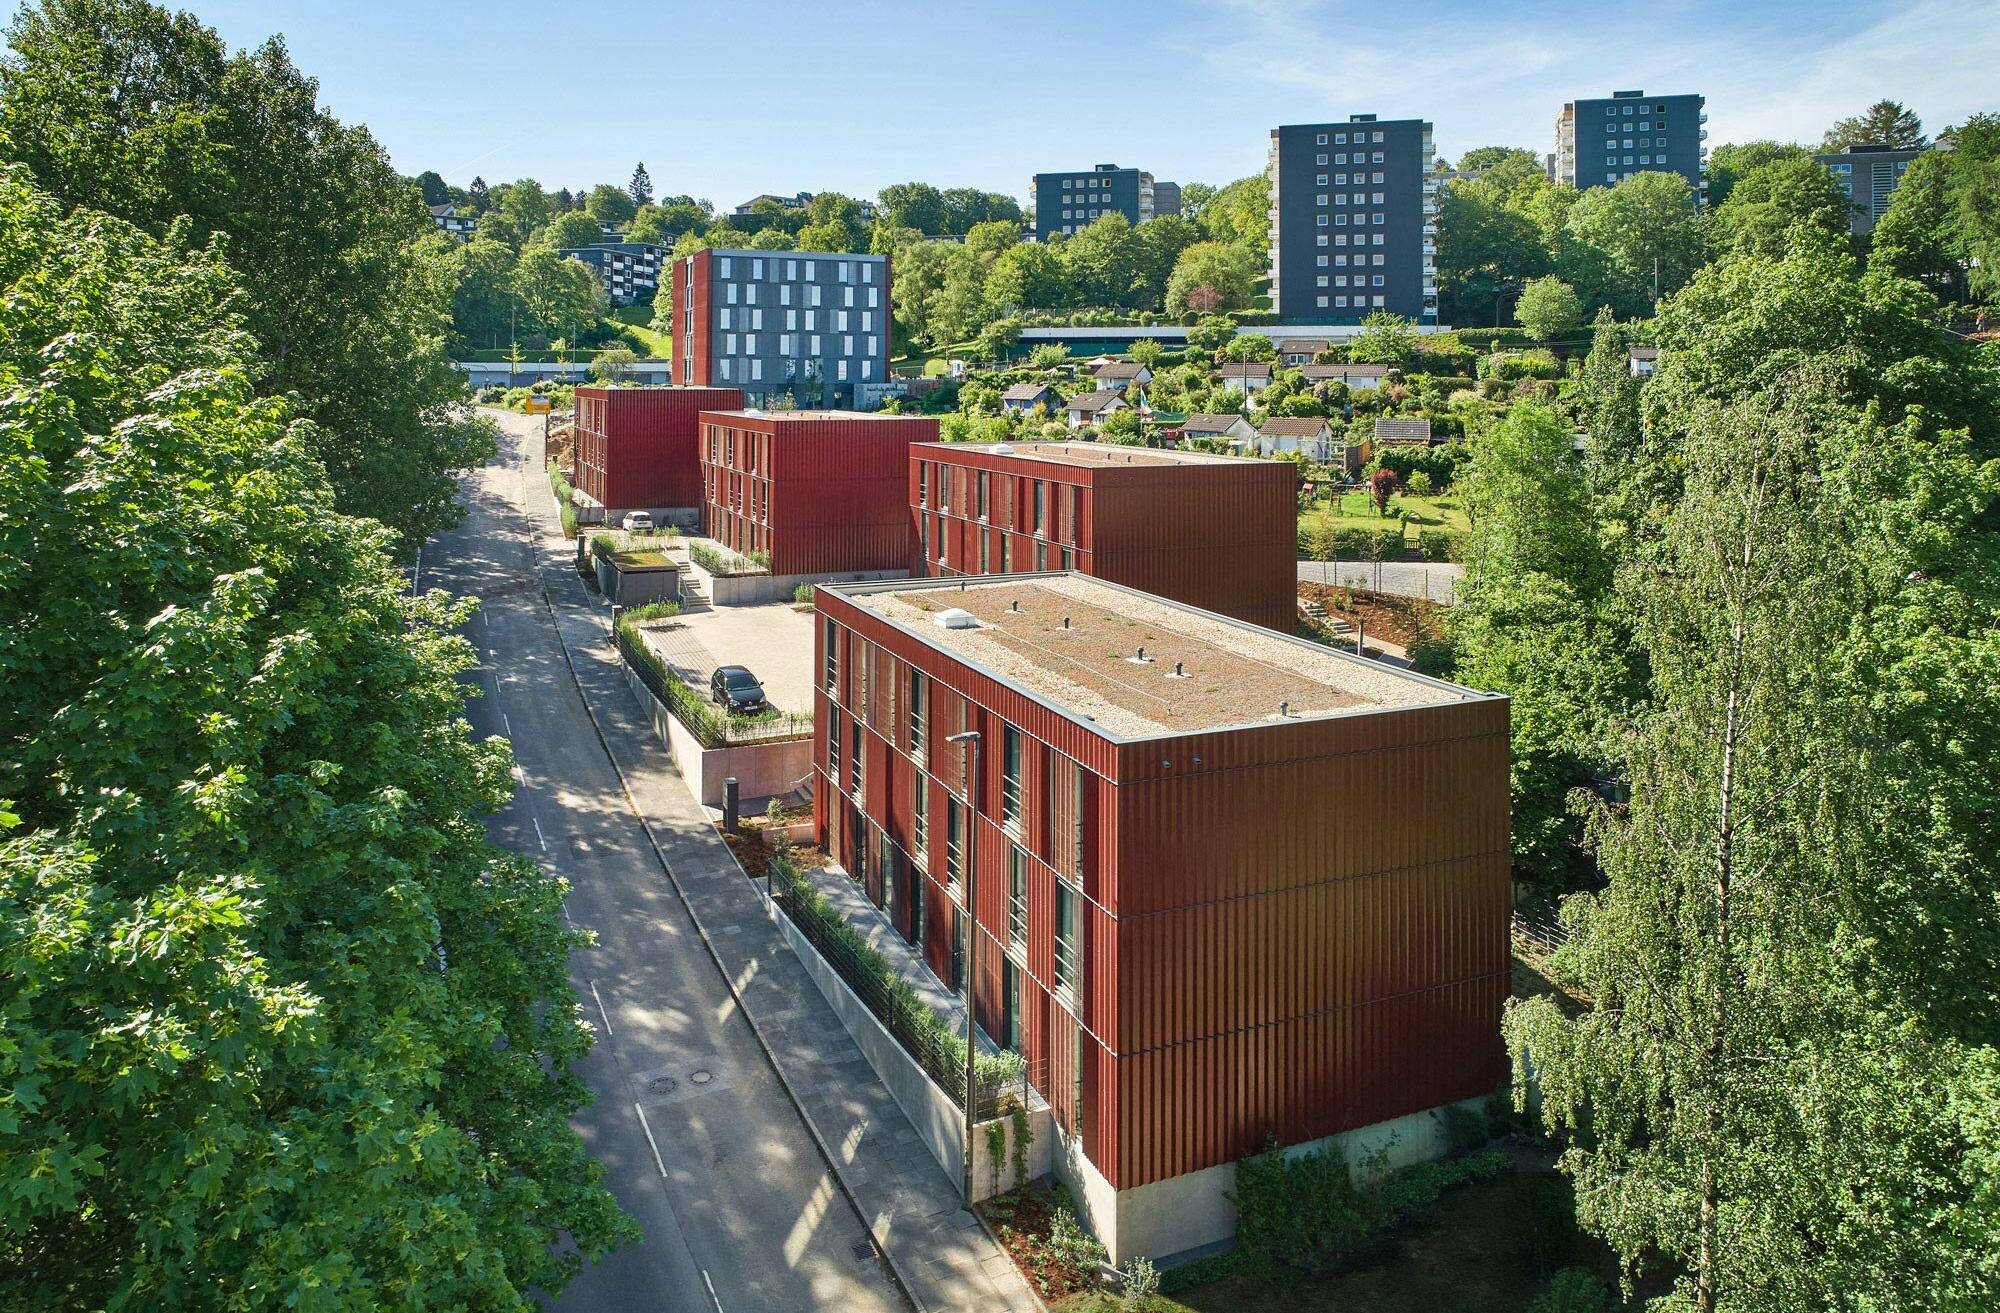  Der alle 3 Jahre vergebene Preis ist bereits die 12. Auszeichnung insgesamt für die Studentenwohnheime des Hochschul-Sozialwerks Wuppertal. 